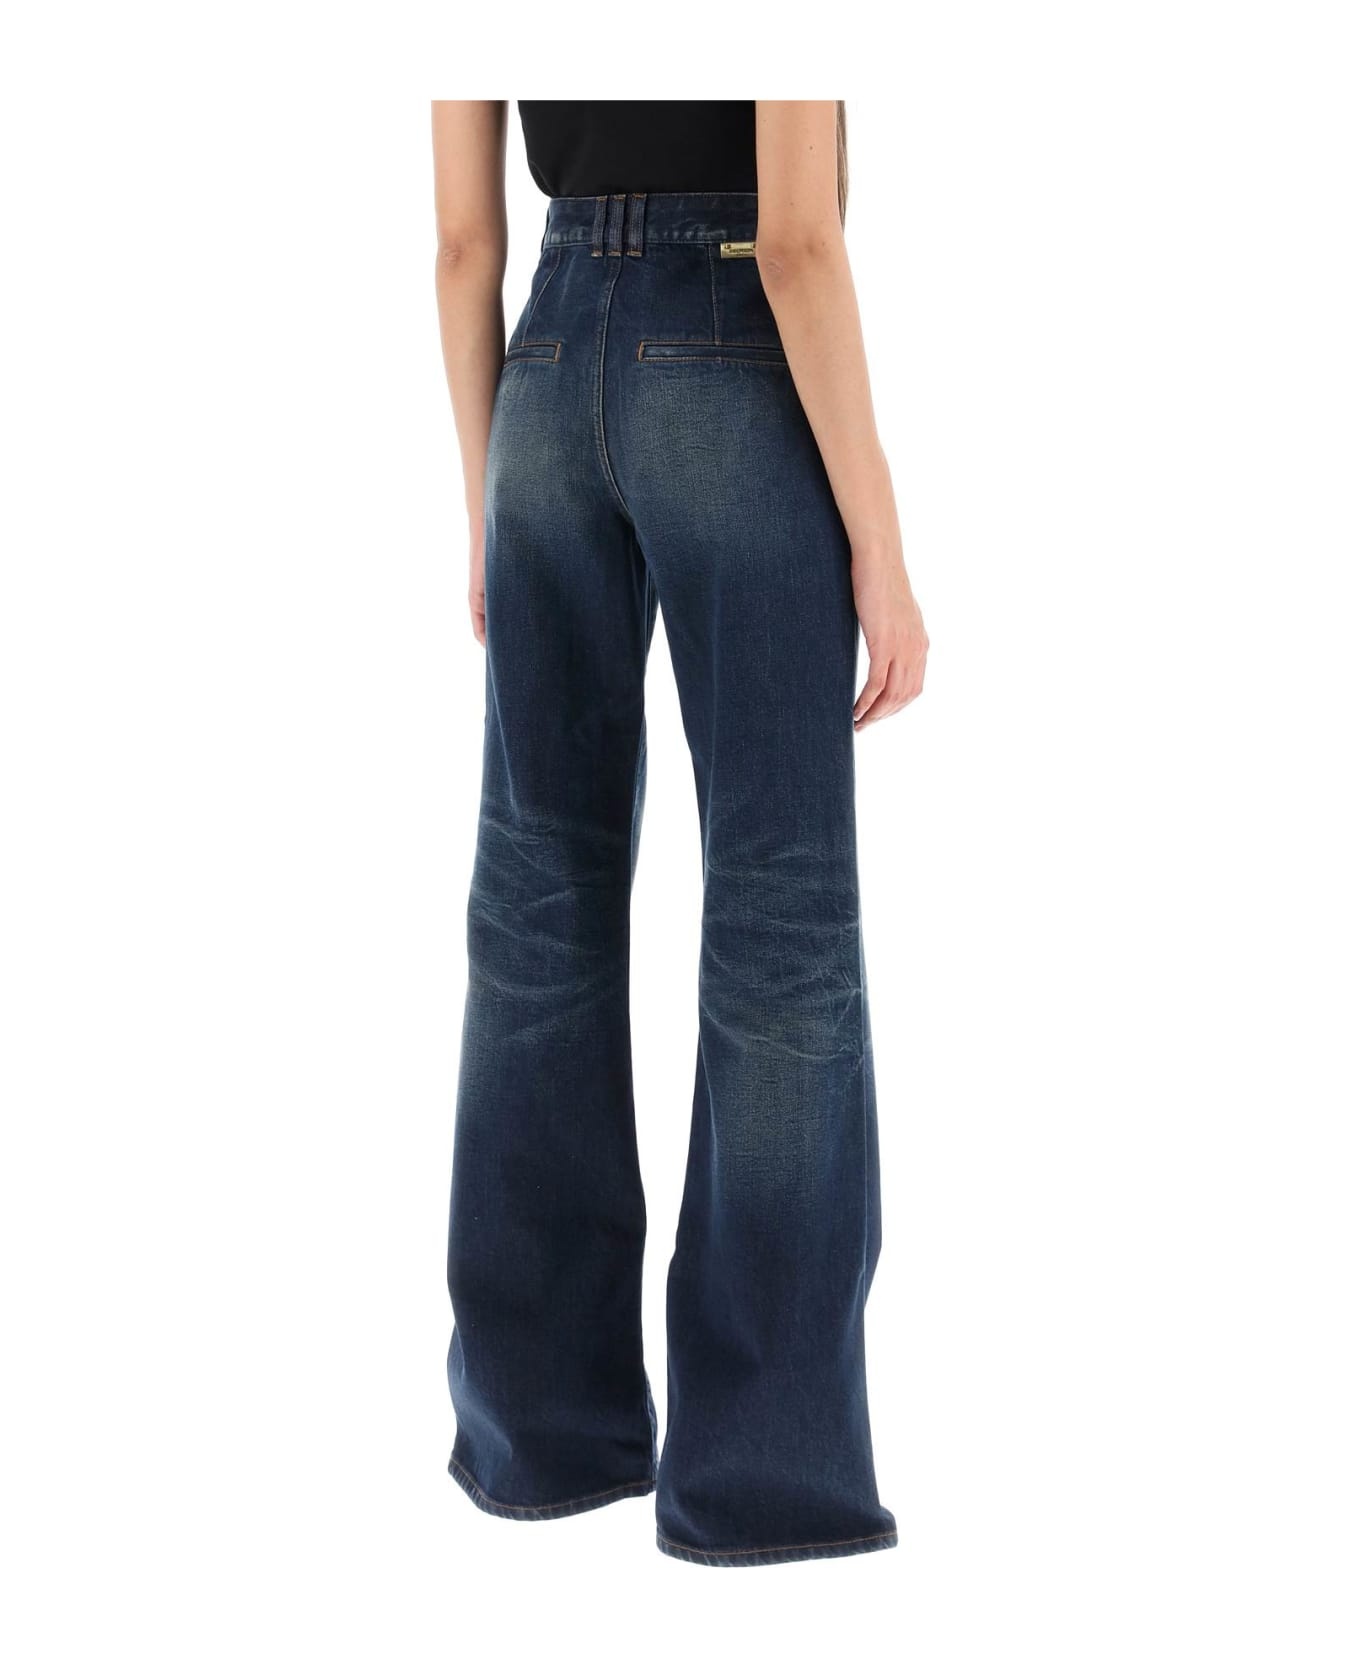 Blue Cotton Jeans - 3